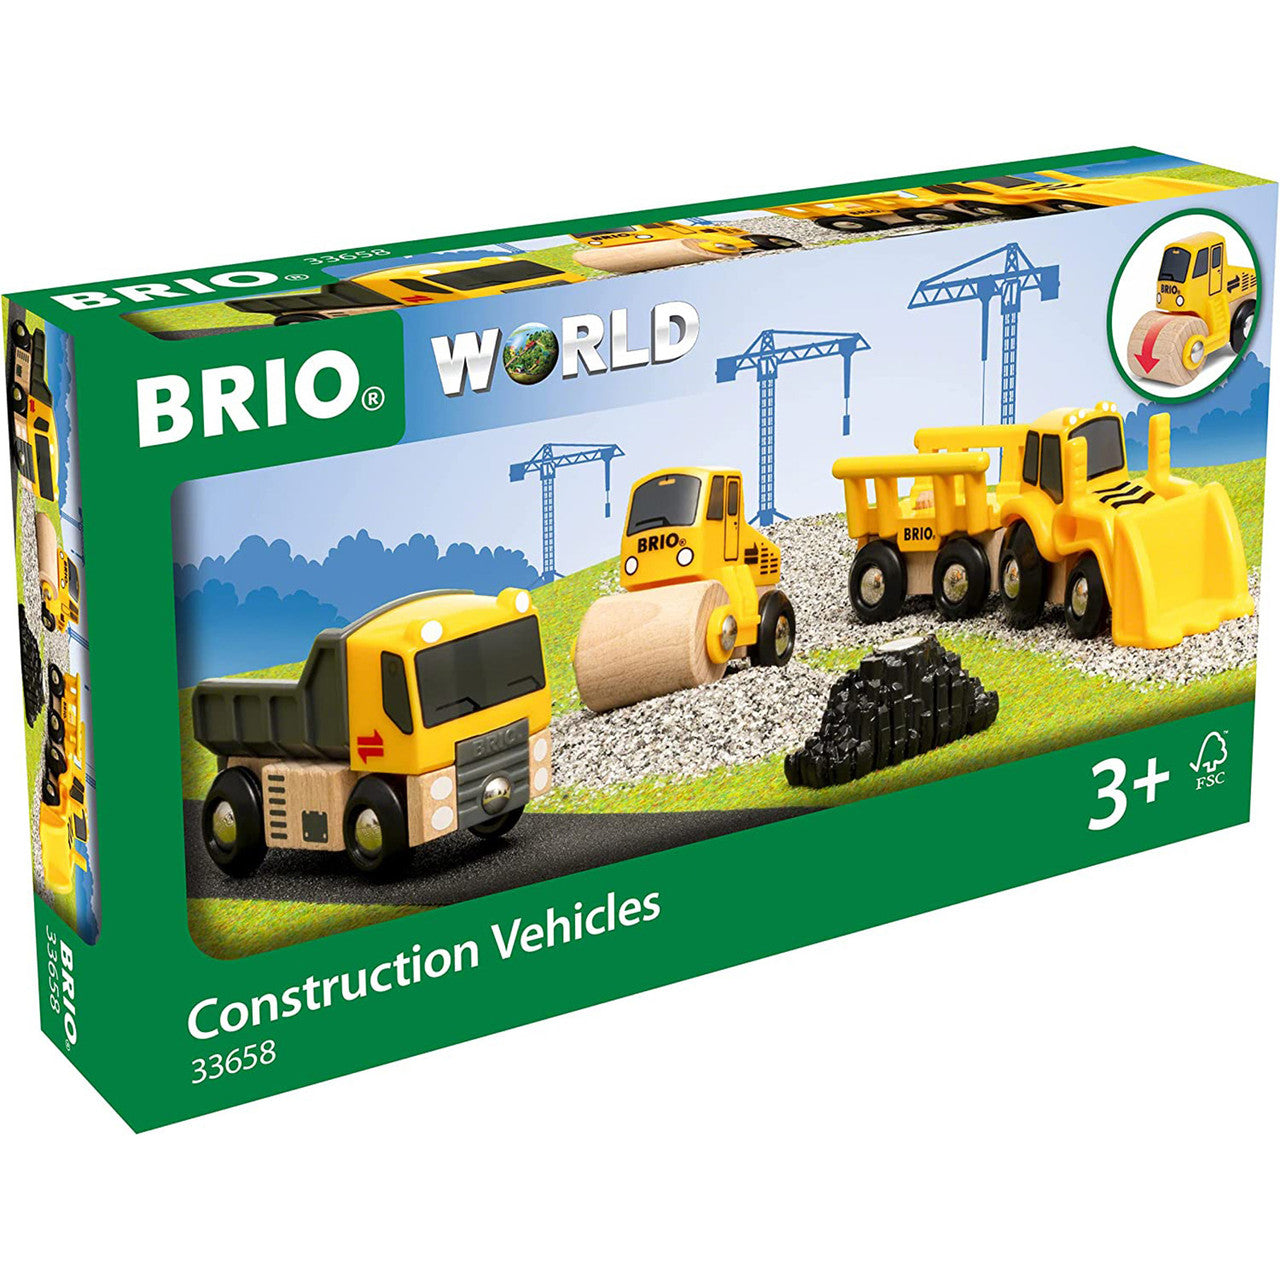 BRIO CONSTRUCTION VEHICLE SET 5 PIECE SET